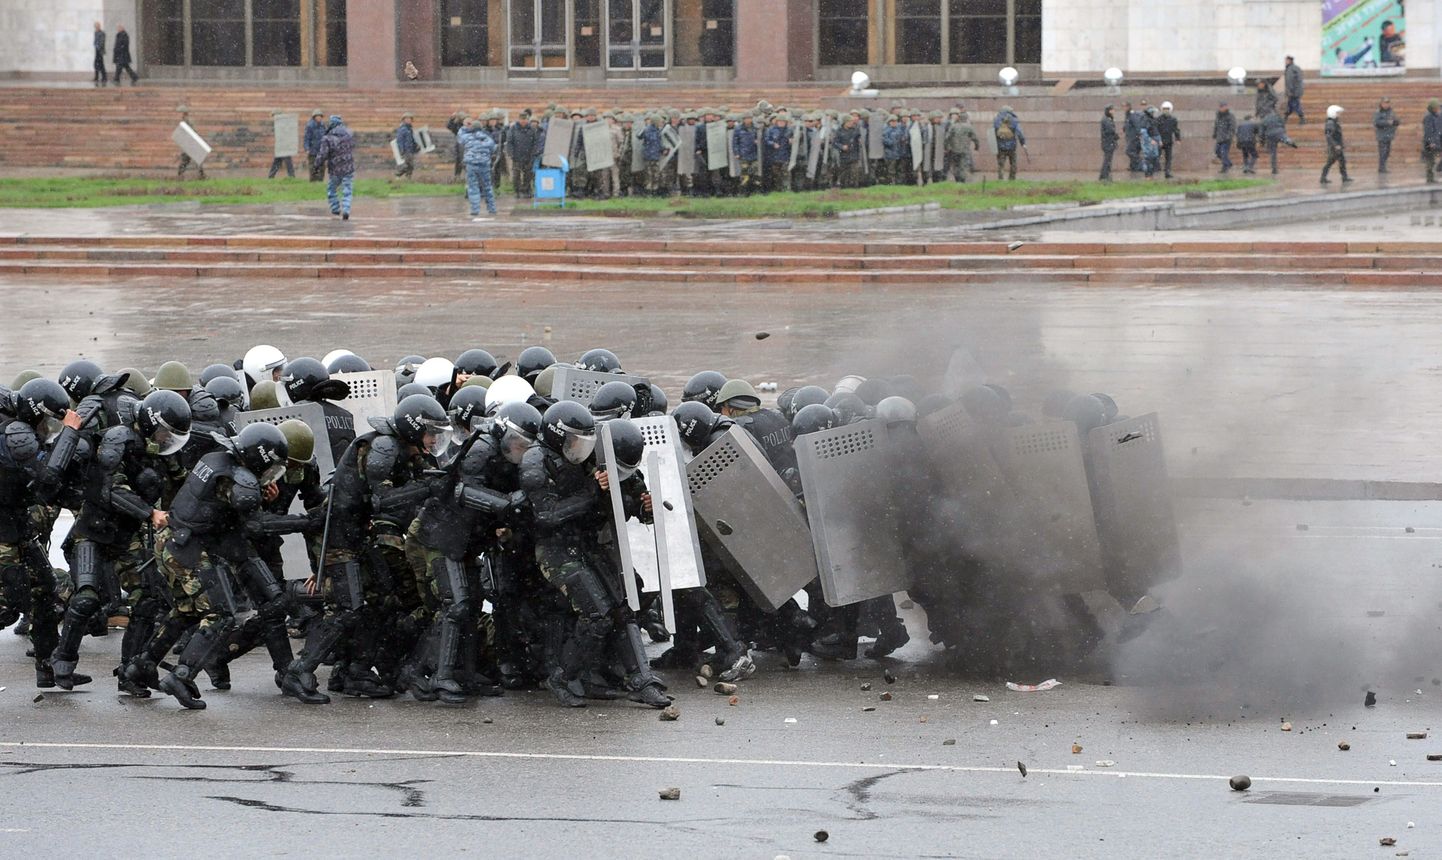 Kõrgõzstani märulipolitsei üritab peatada meeleavaldajate pealetungi.